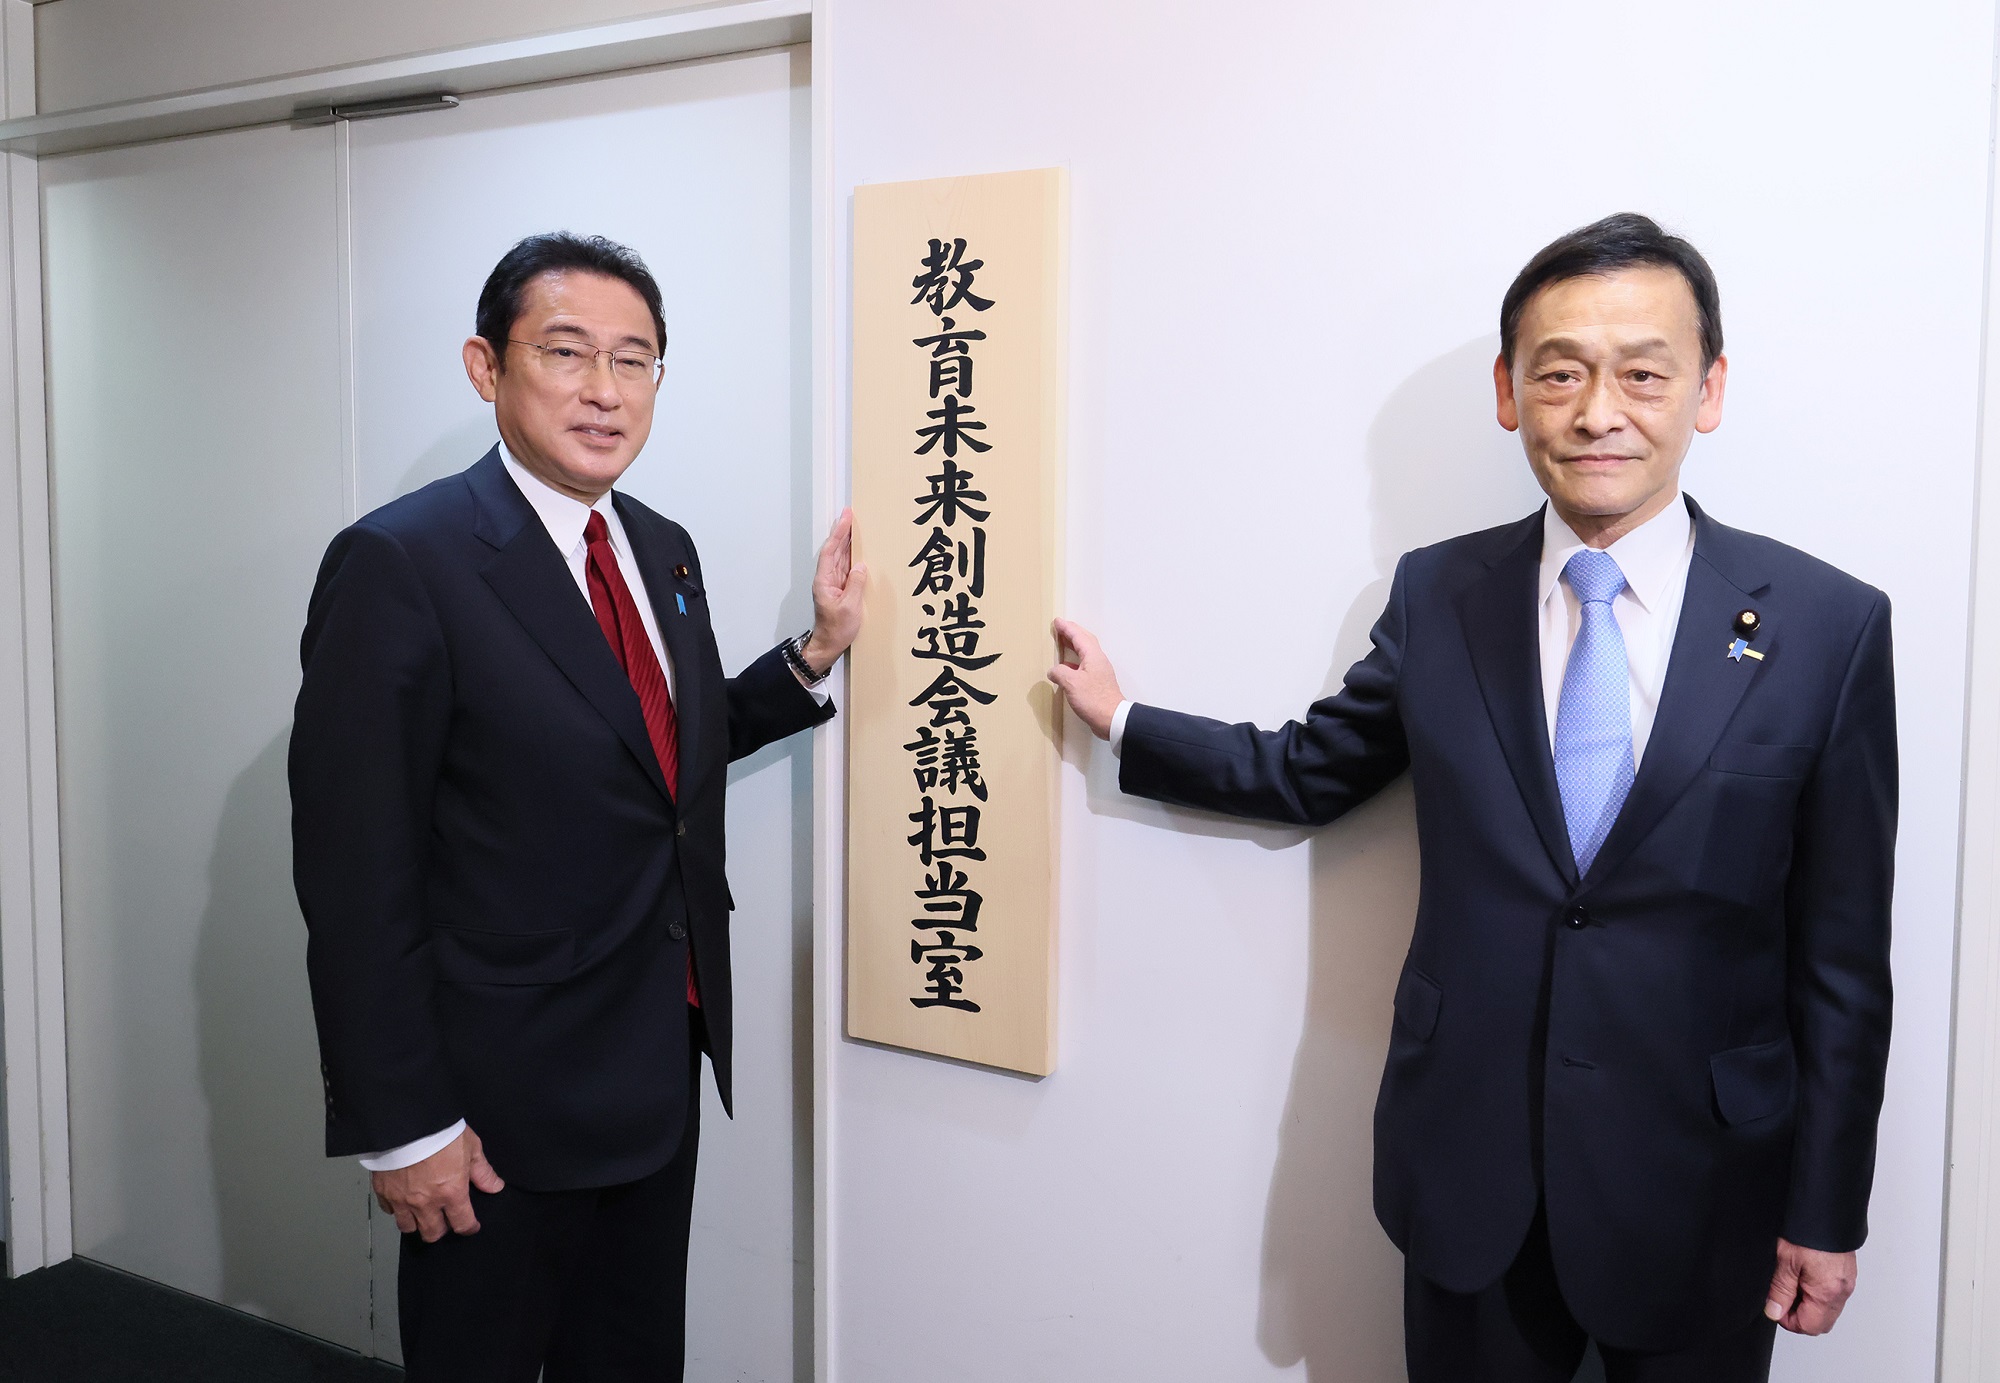 教育未来創造会議担当室の看板を掛ける岸田総理３